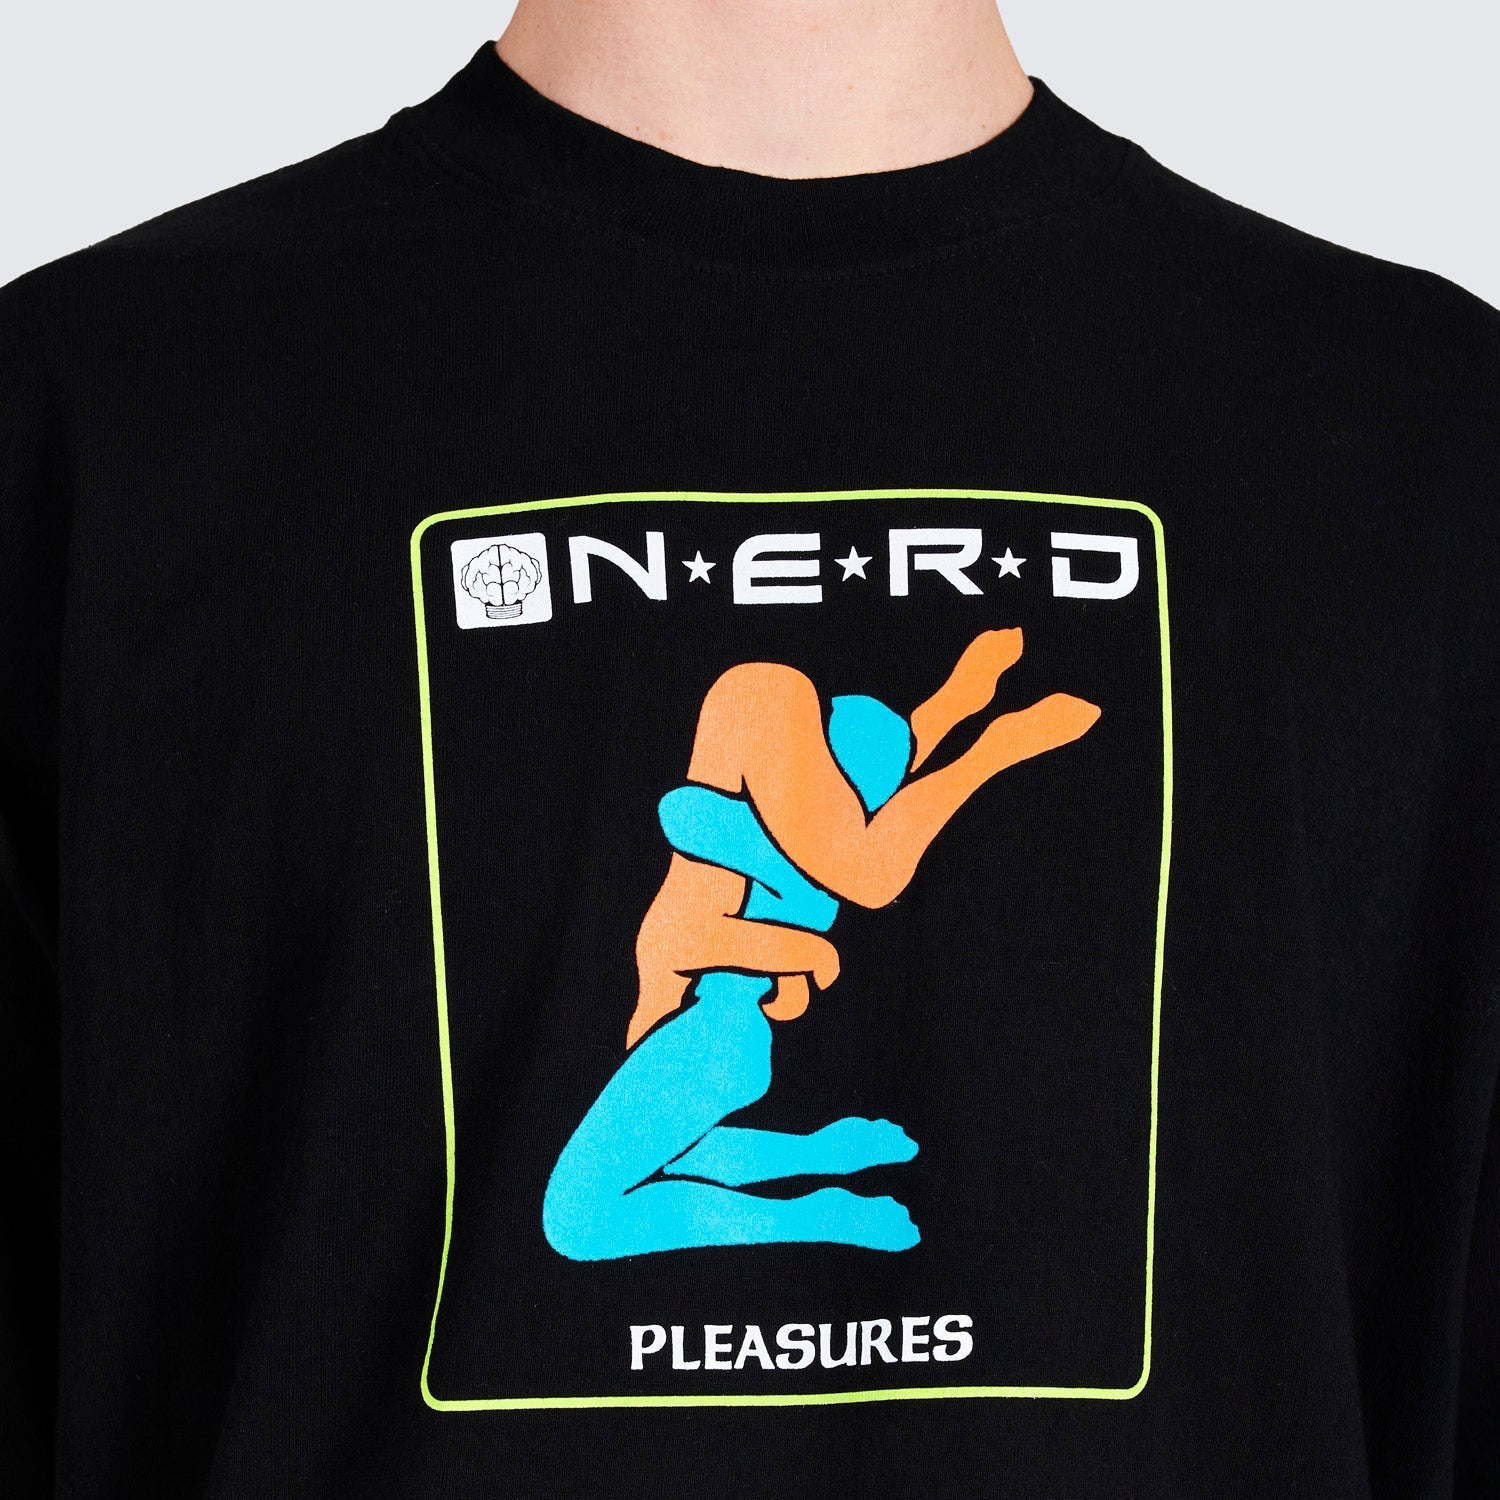 Pleasures Men Provider T-Shirt Black - T-SHIRTS - Canada